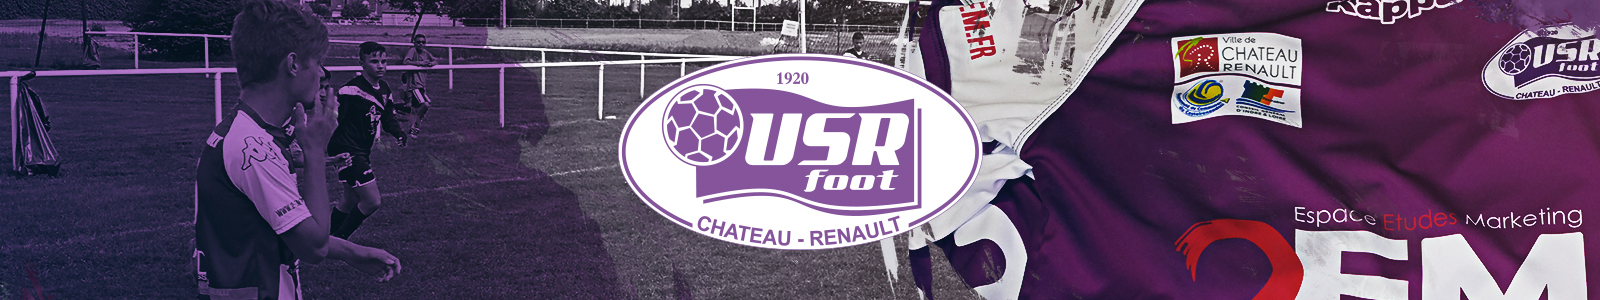 Union Sportive Renaudine 37 : site officiel du club de foot de CHATEAU RENAULT - footeo